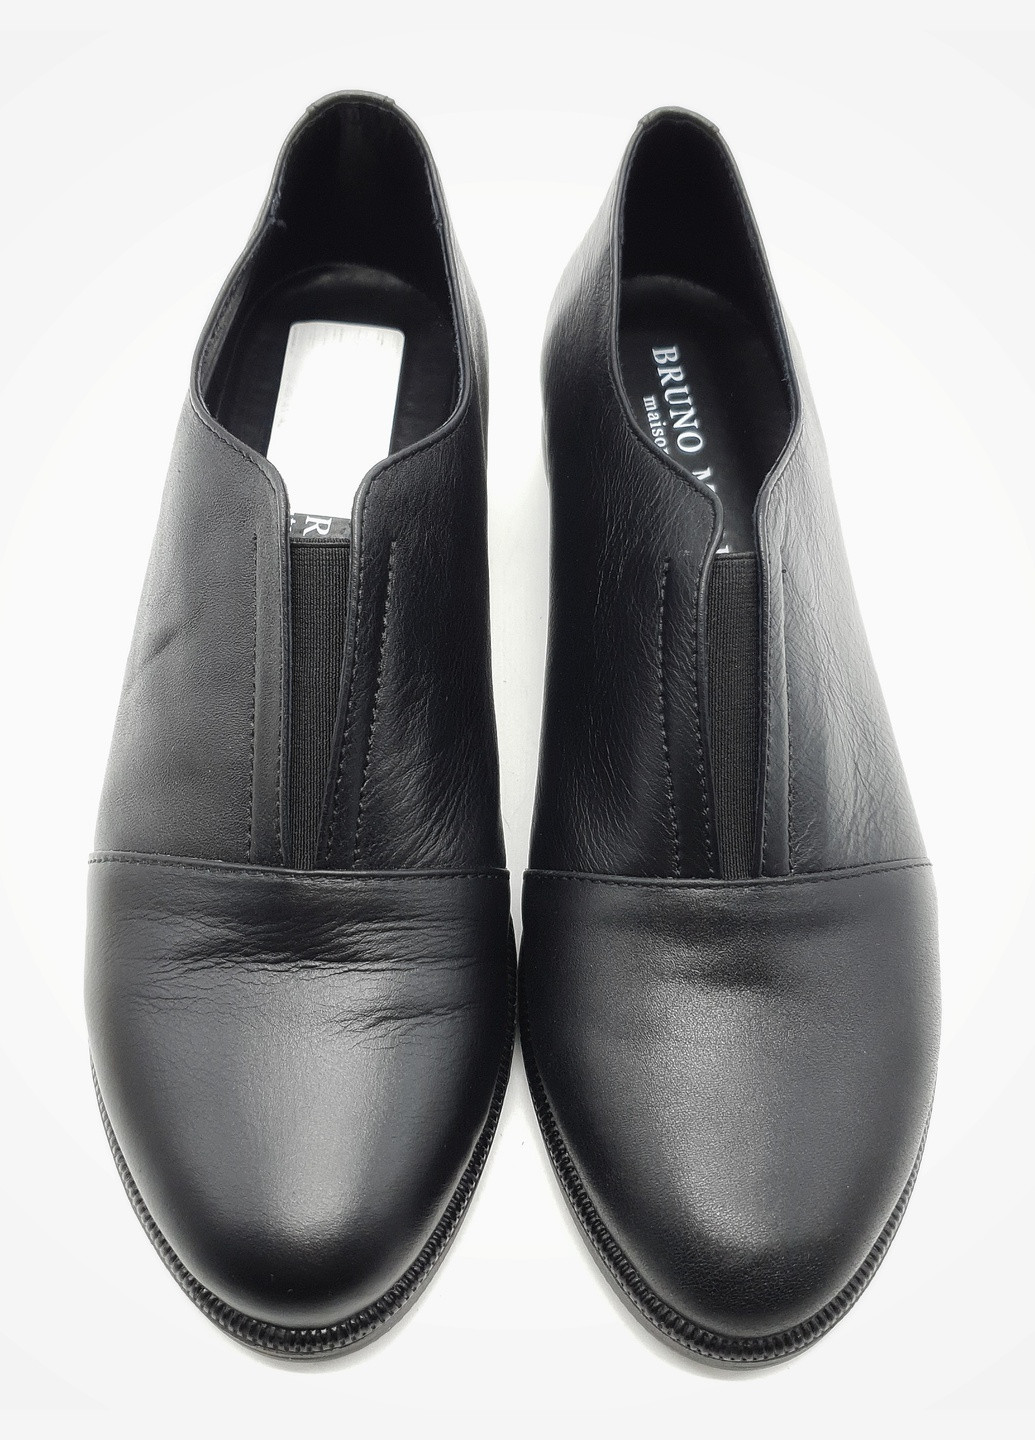 Женские туфли черные кожаные MN-16-11 25,5 см (р) Mariani